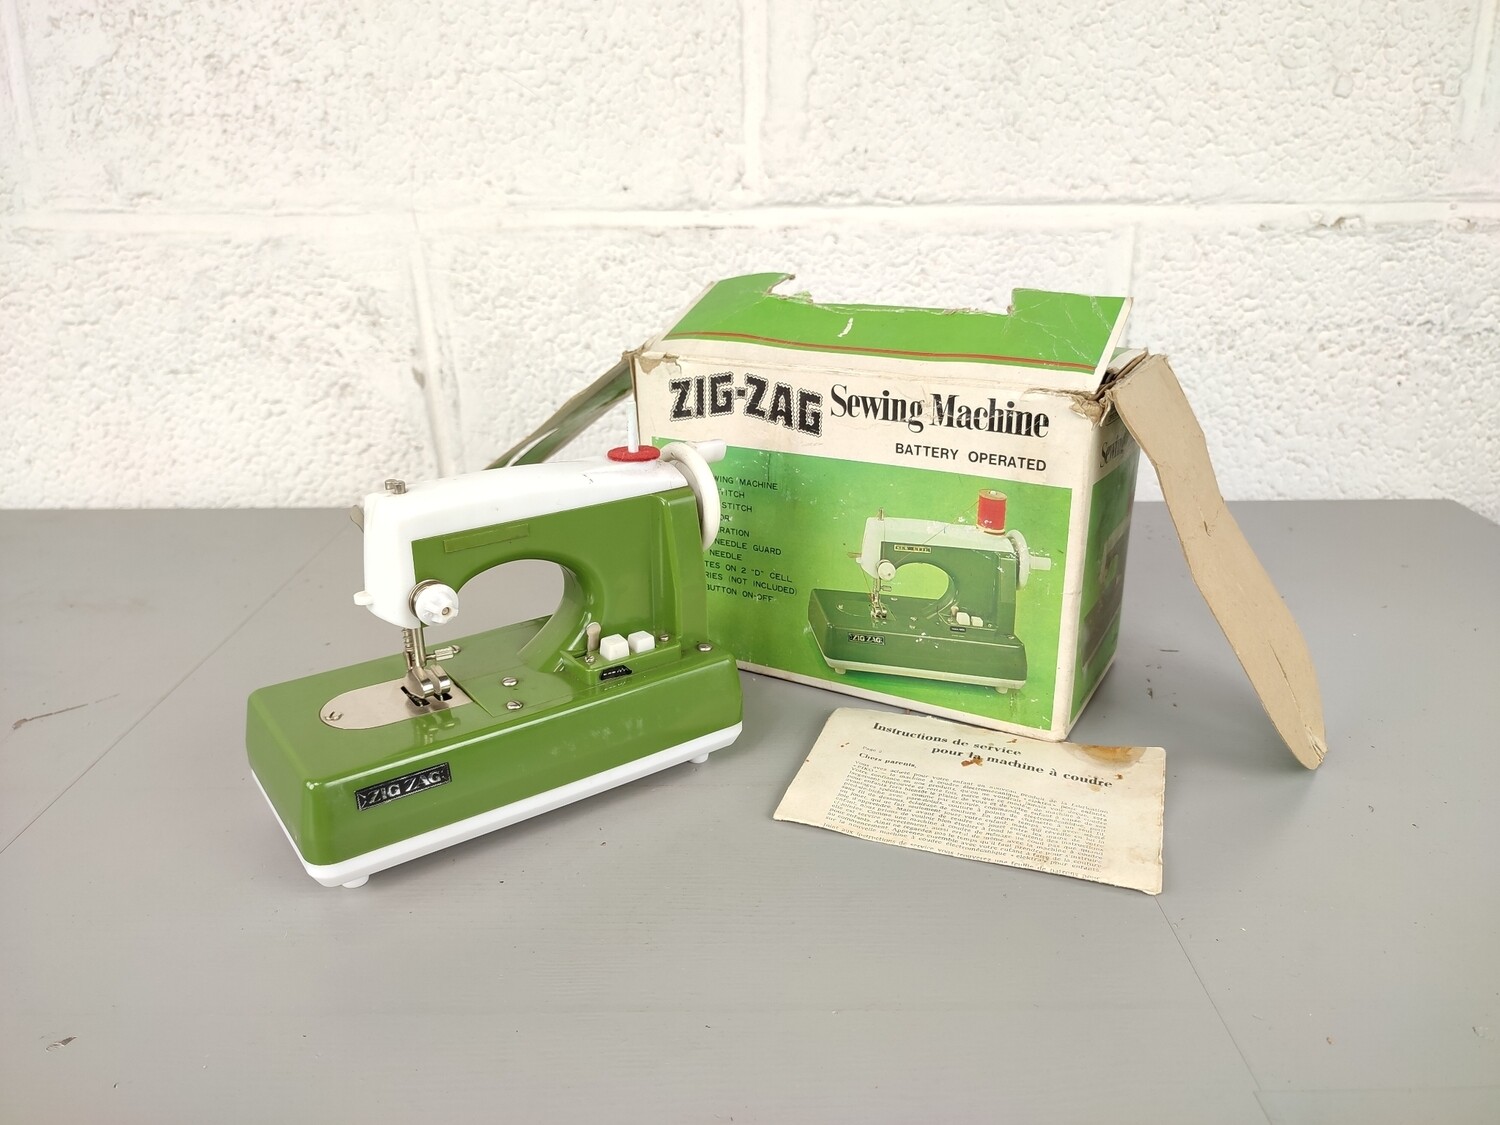 Vintage Zig-zag toy sewing machine